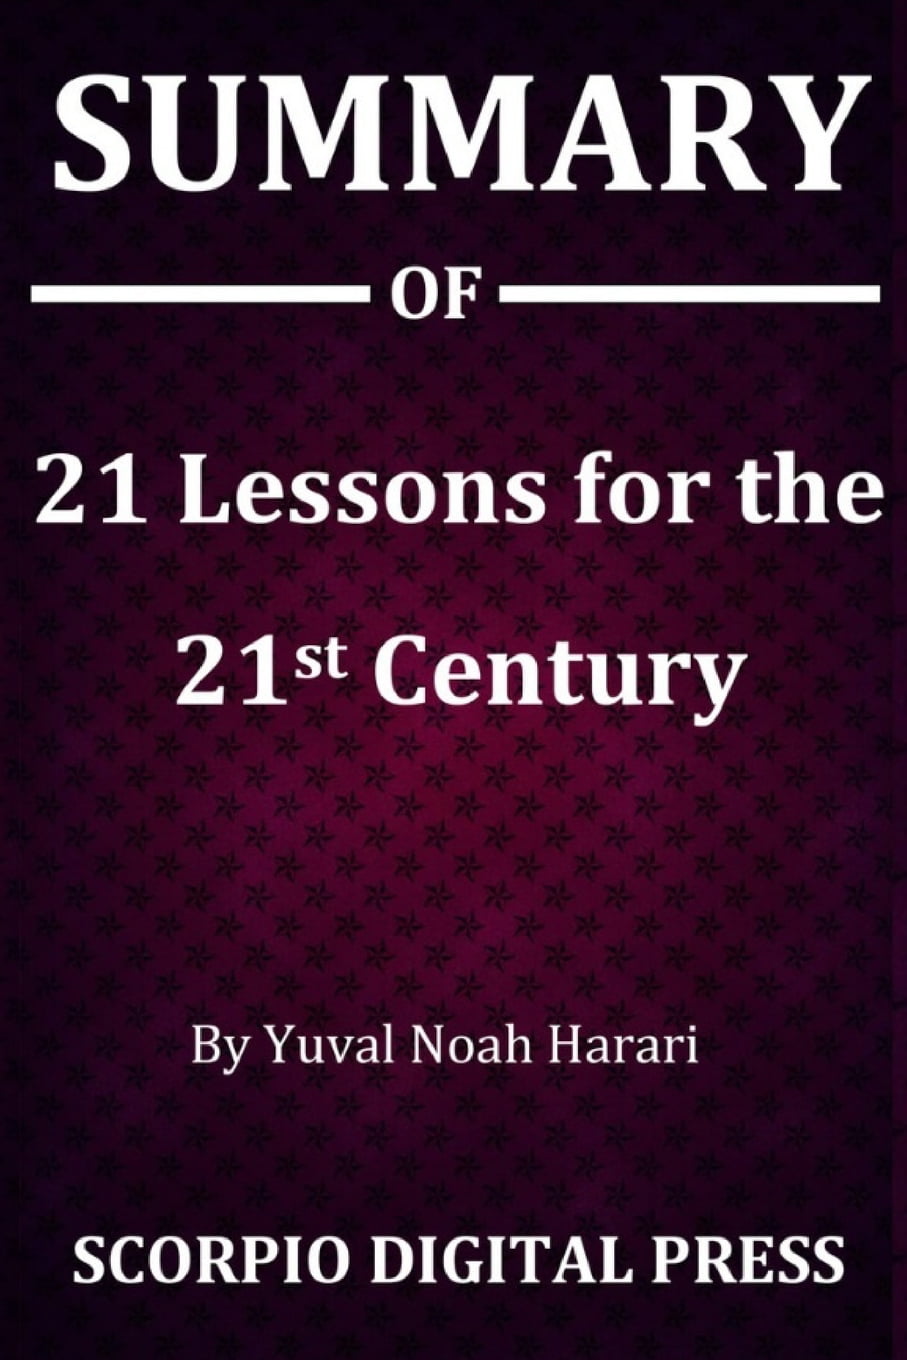 21st century yuval noah harari